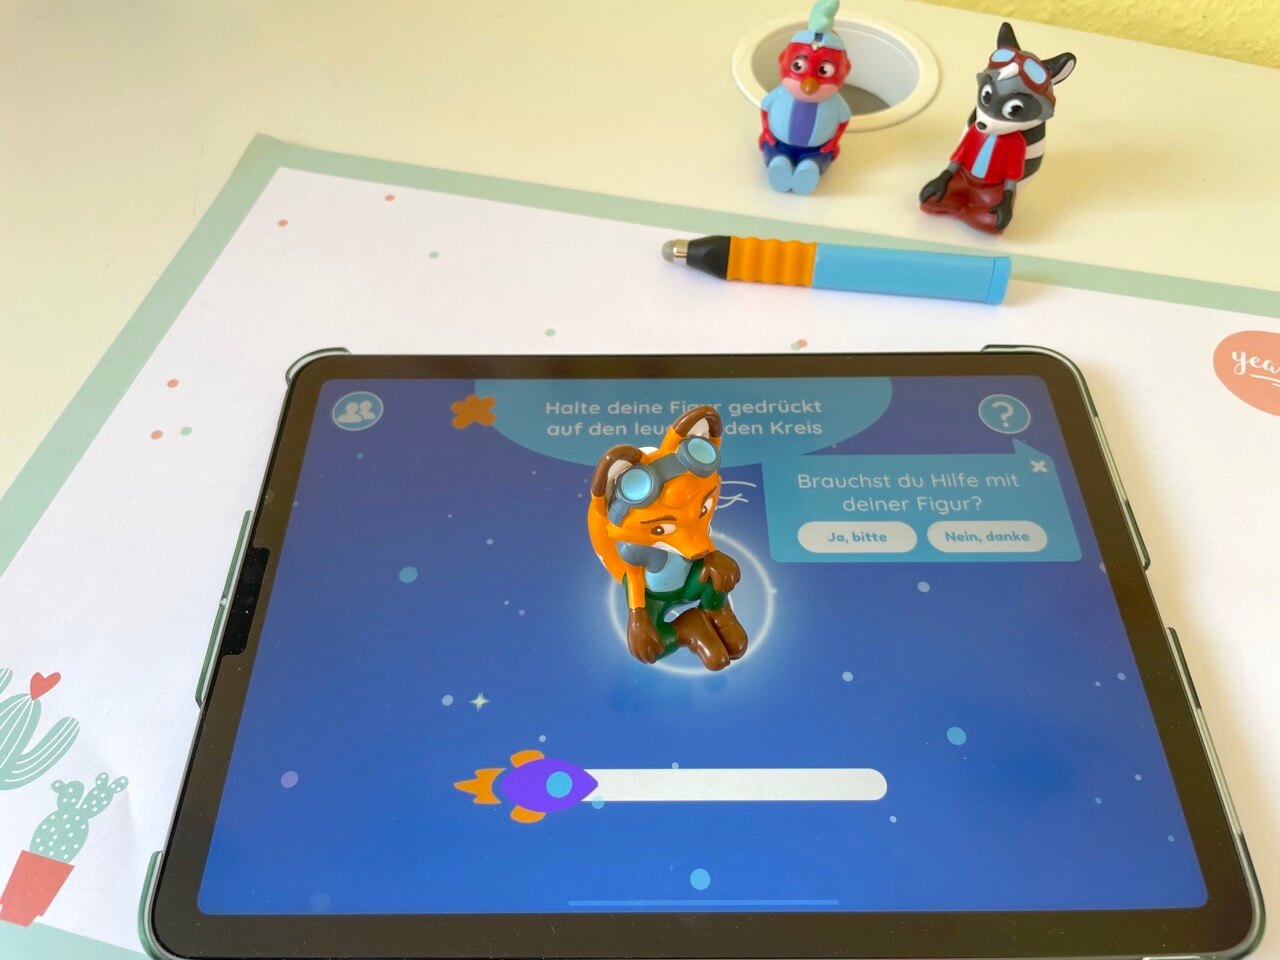 Edurino auf einem iOS-Apple-Tablet. Die Figur Mika startet die Deutsch-Lernspiele - bitte.kaufen